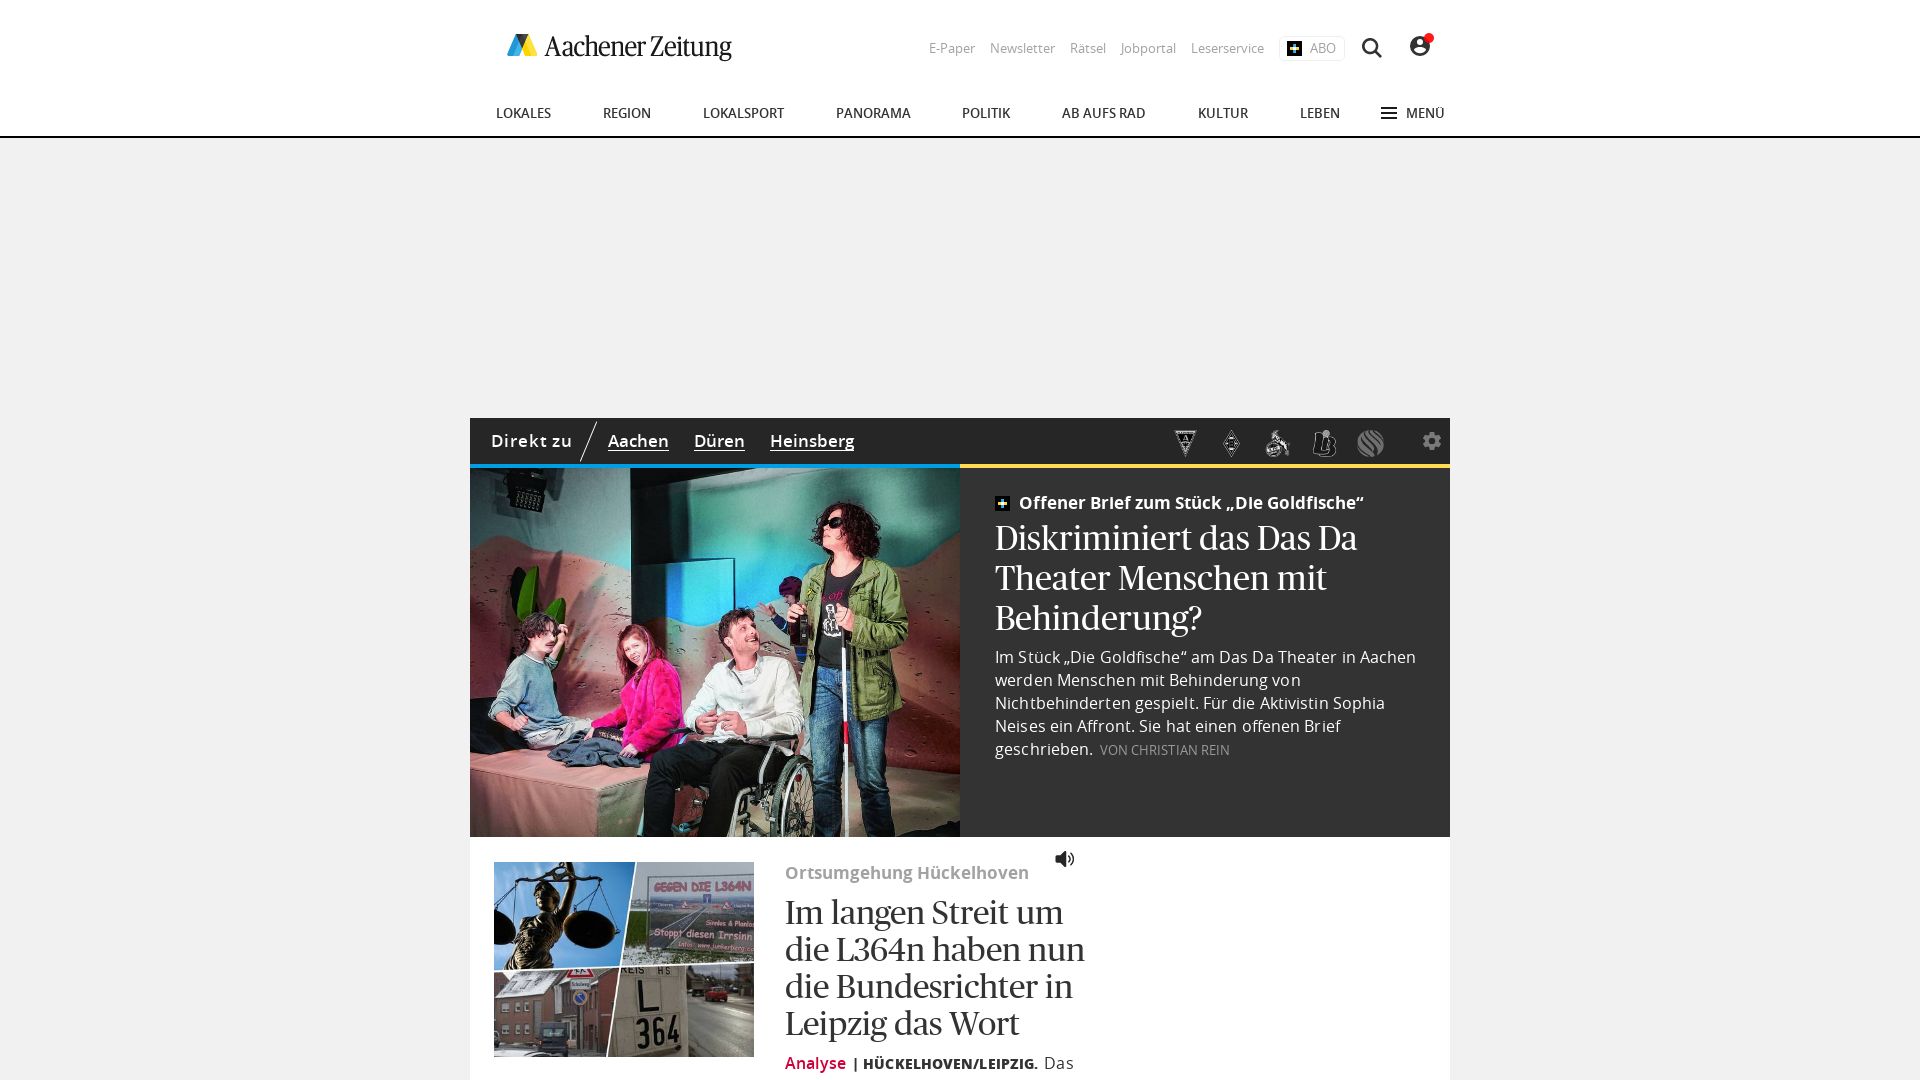 вебсайт aachener-zeitung.de Є   ONLINE